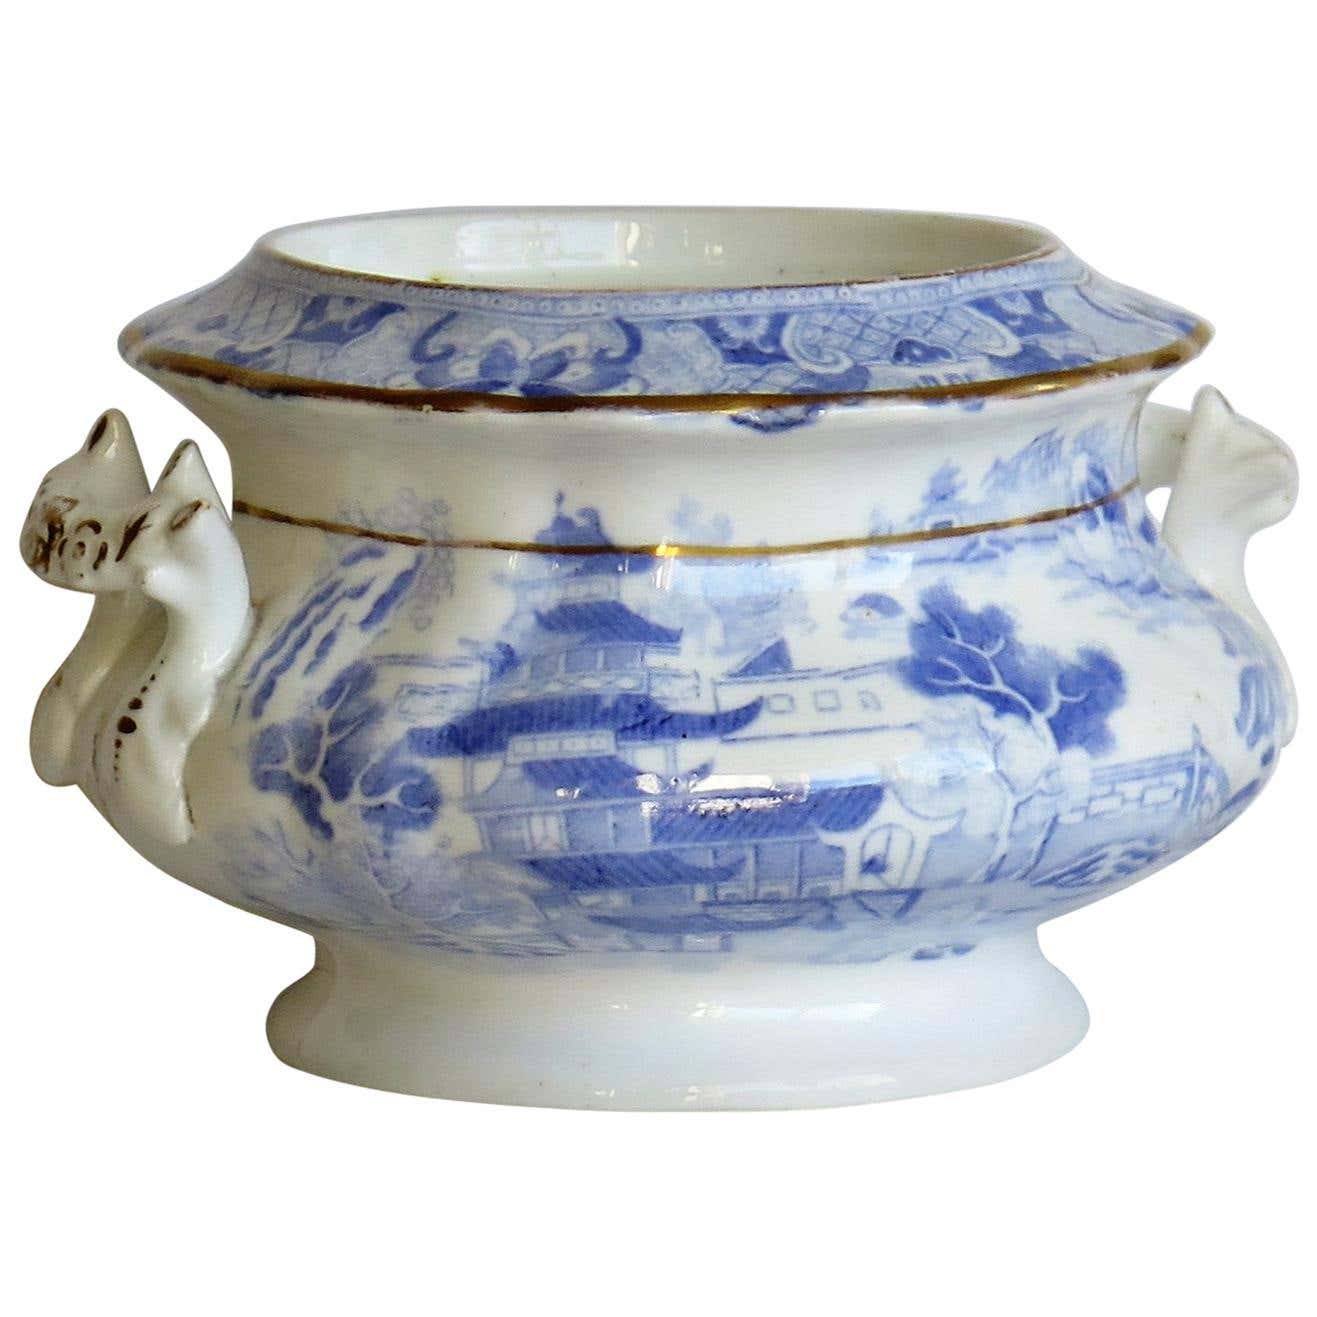 Sucrier en porcelaine bleu et blanc à motif de saule de Miles Mason, datant d'environ 1810